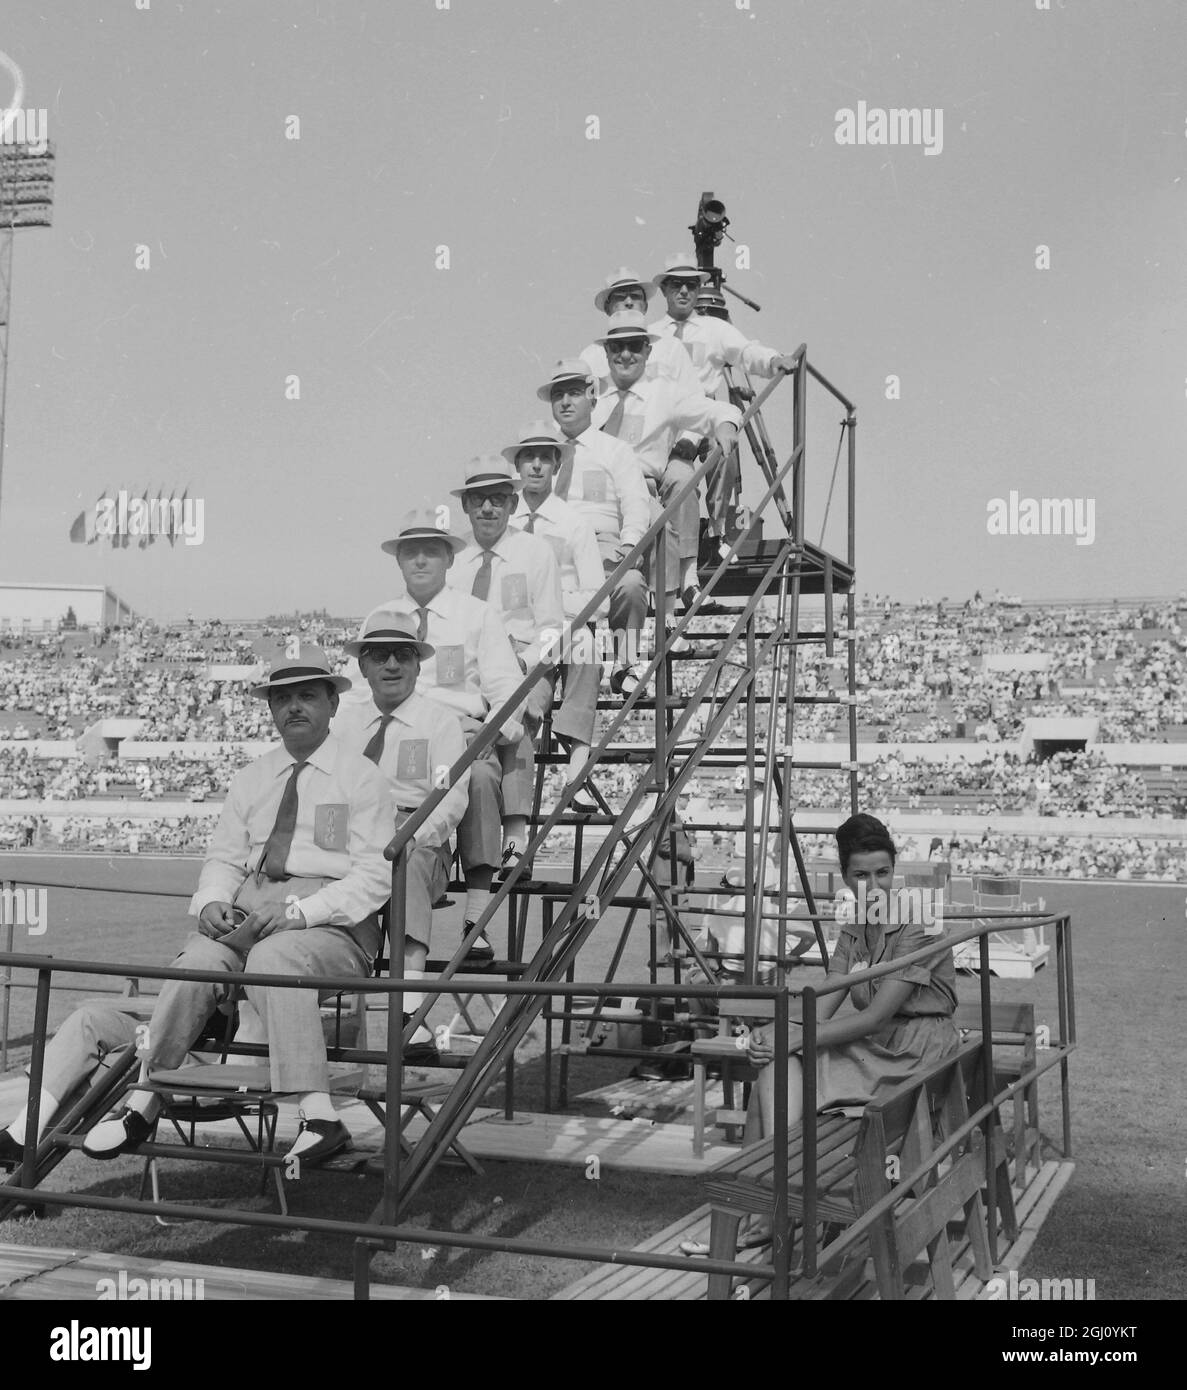 JUECES DE LOS JUEGOS OLÍMPICOS 1 DE SEPTIEMBRE DE 1960 Foto de stock